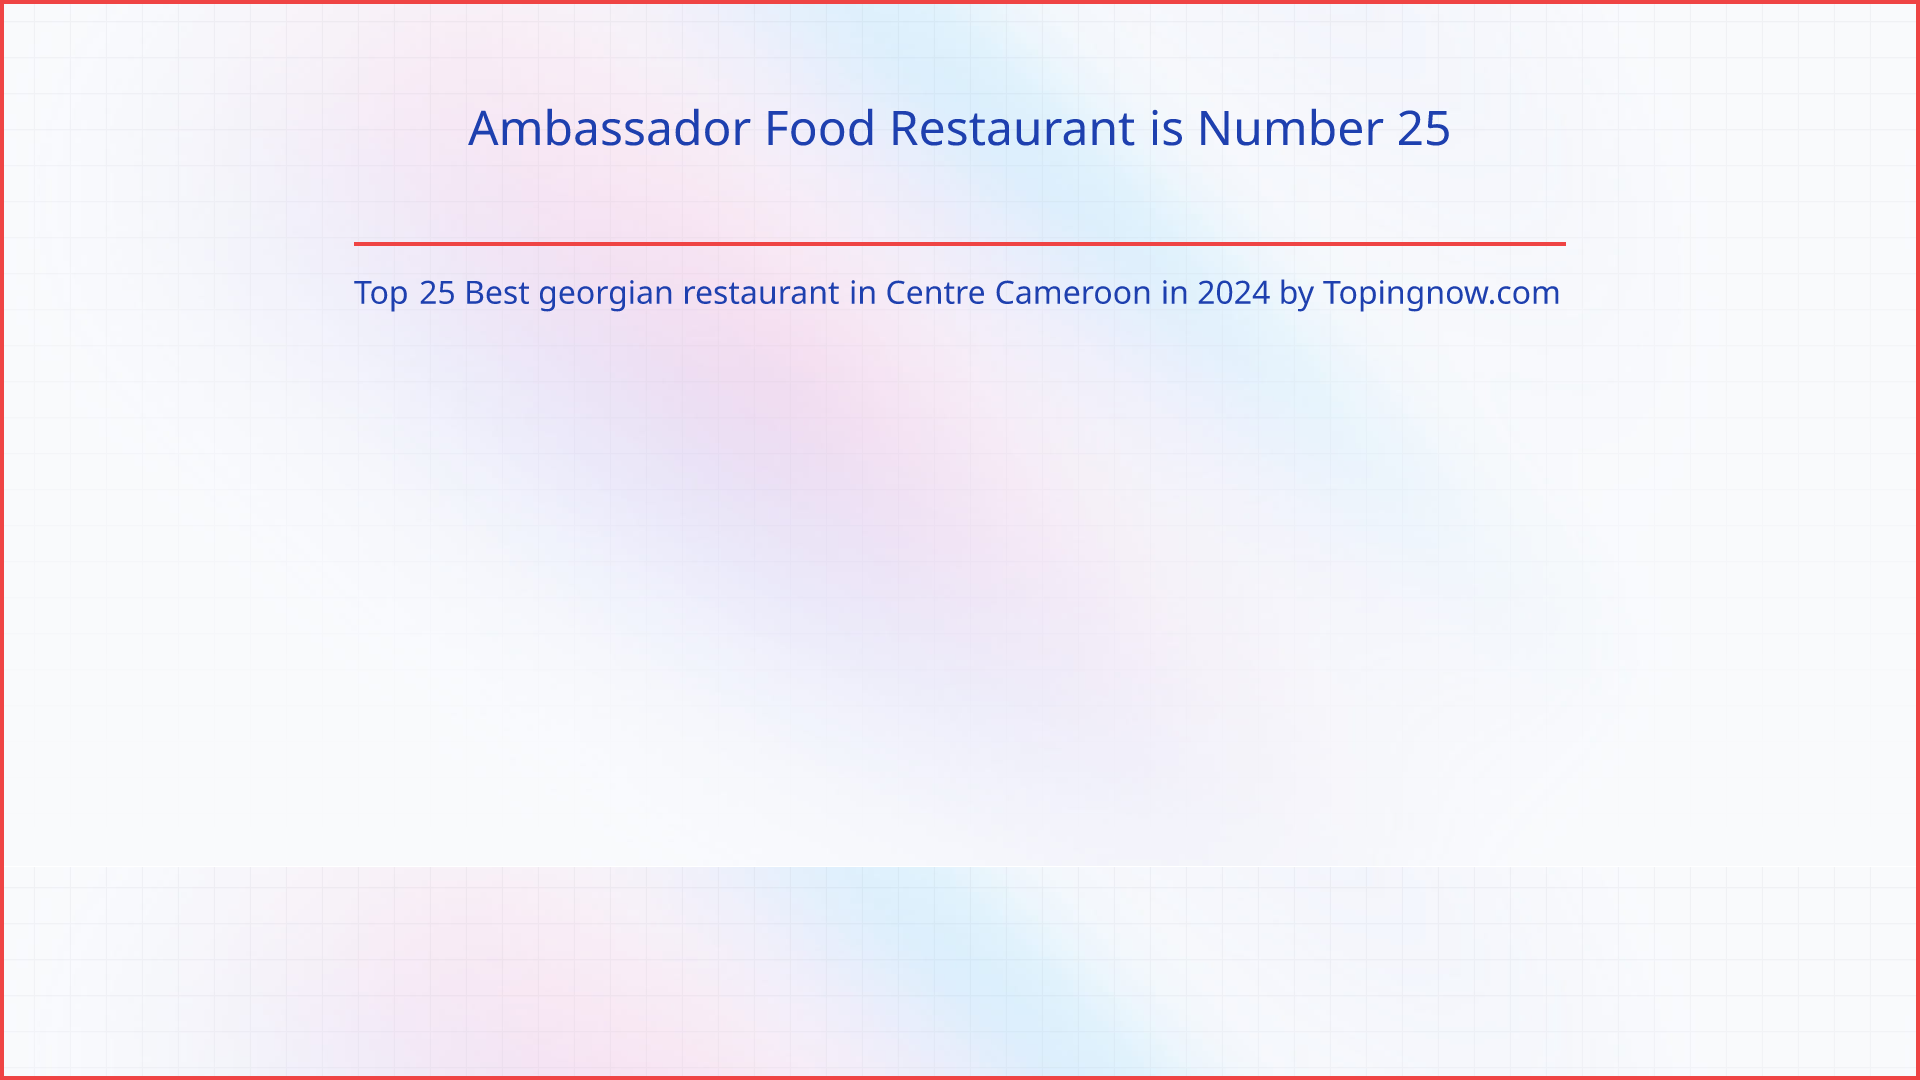 Ambassador Food Restaurant: Top 25 Best georgian restaurant in Centre Cameroon in 2024